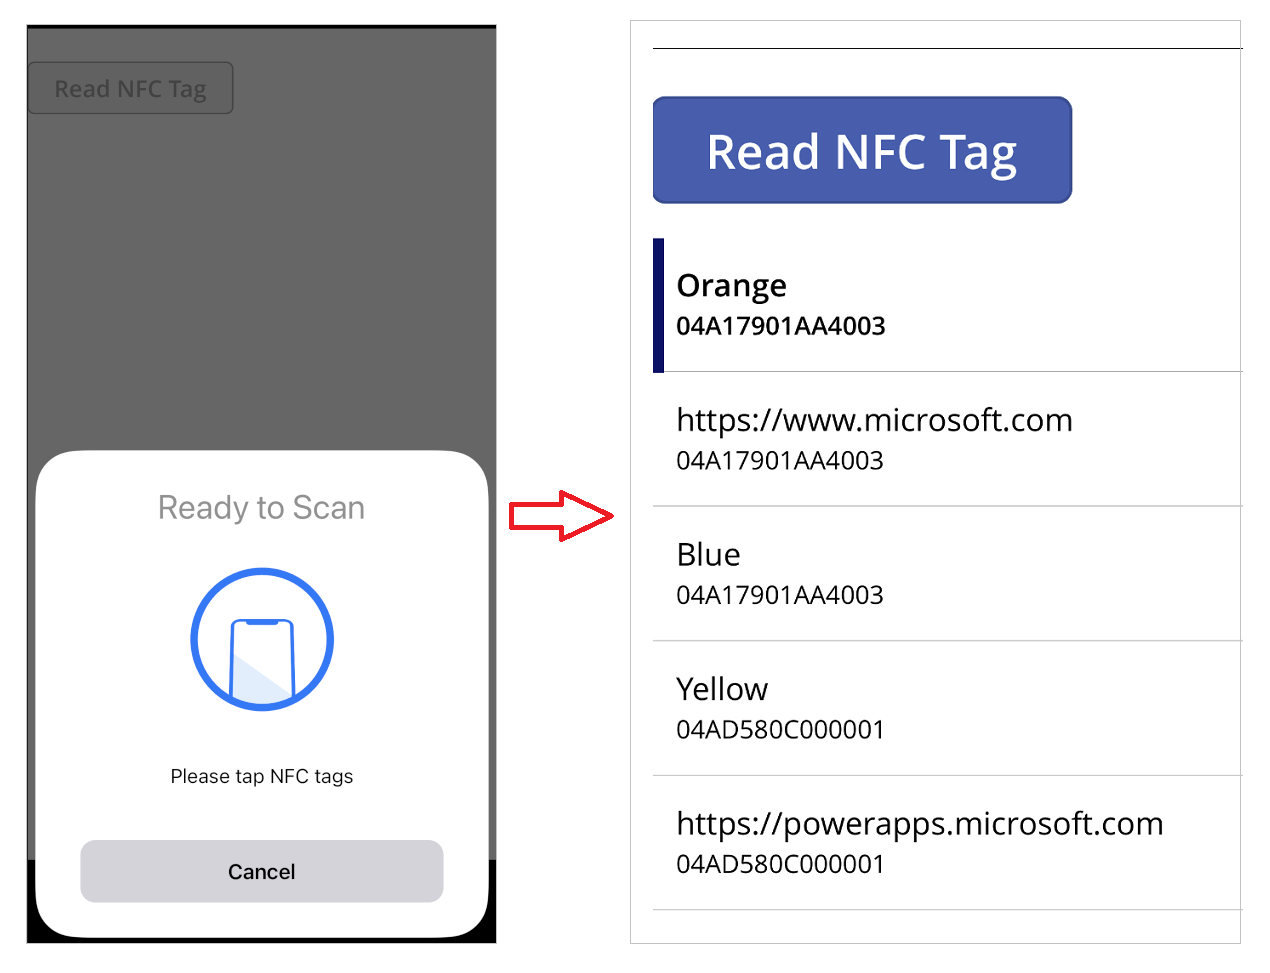 יישום במכשיר נייד עם קריאת תגית NFC לדוגמה והתוצאה בתוך הגלריה.